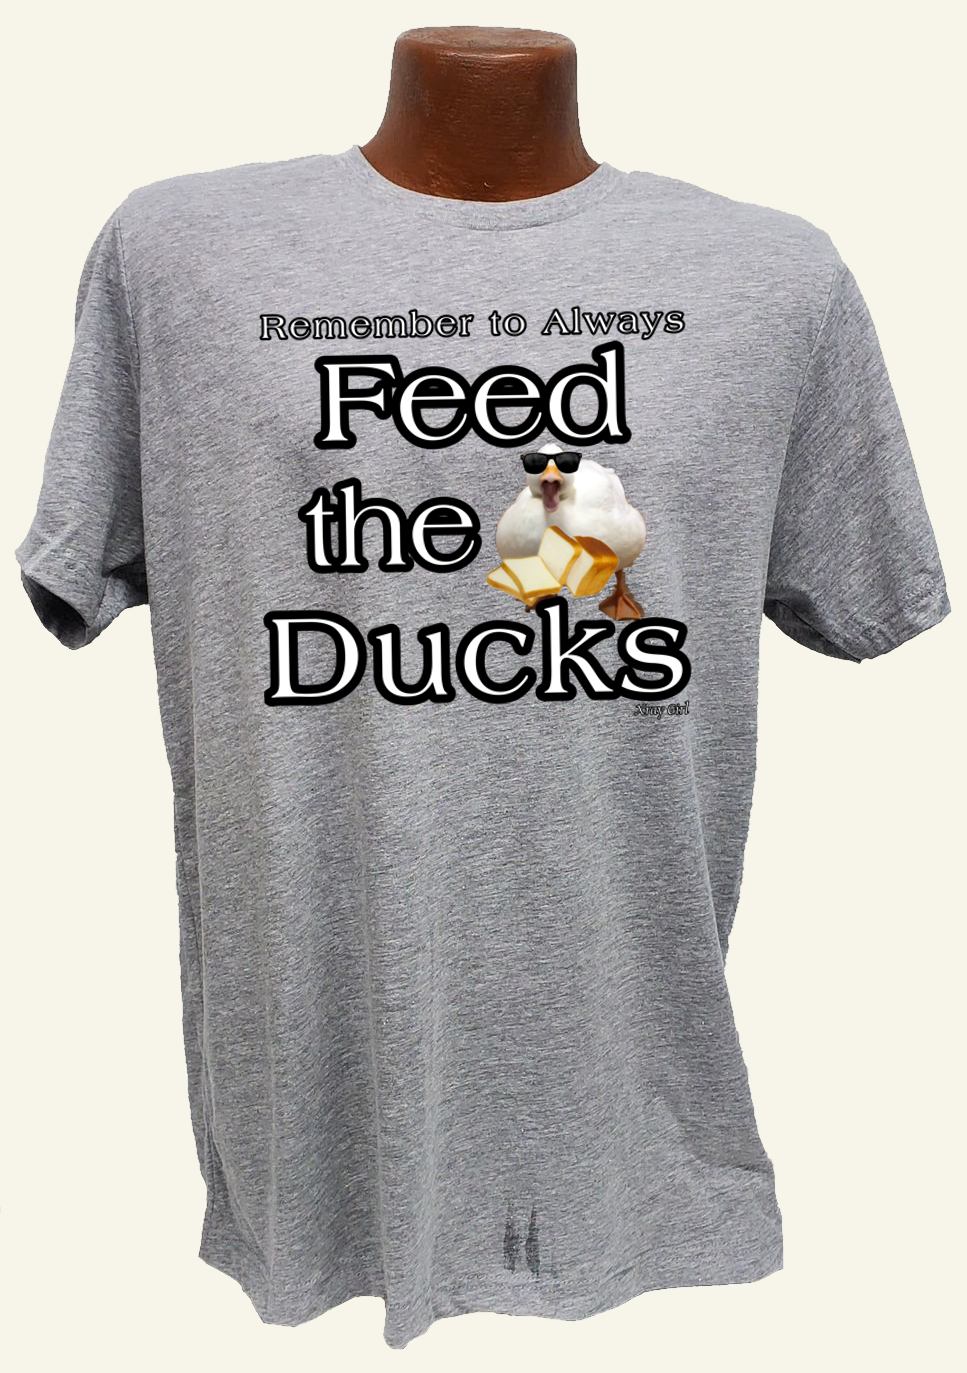 Feed the Ducks Tee